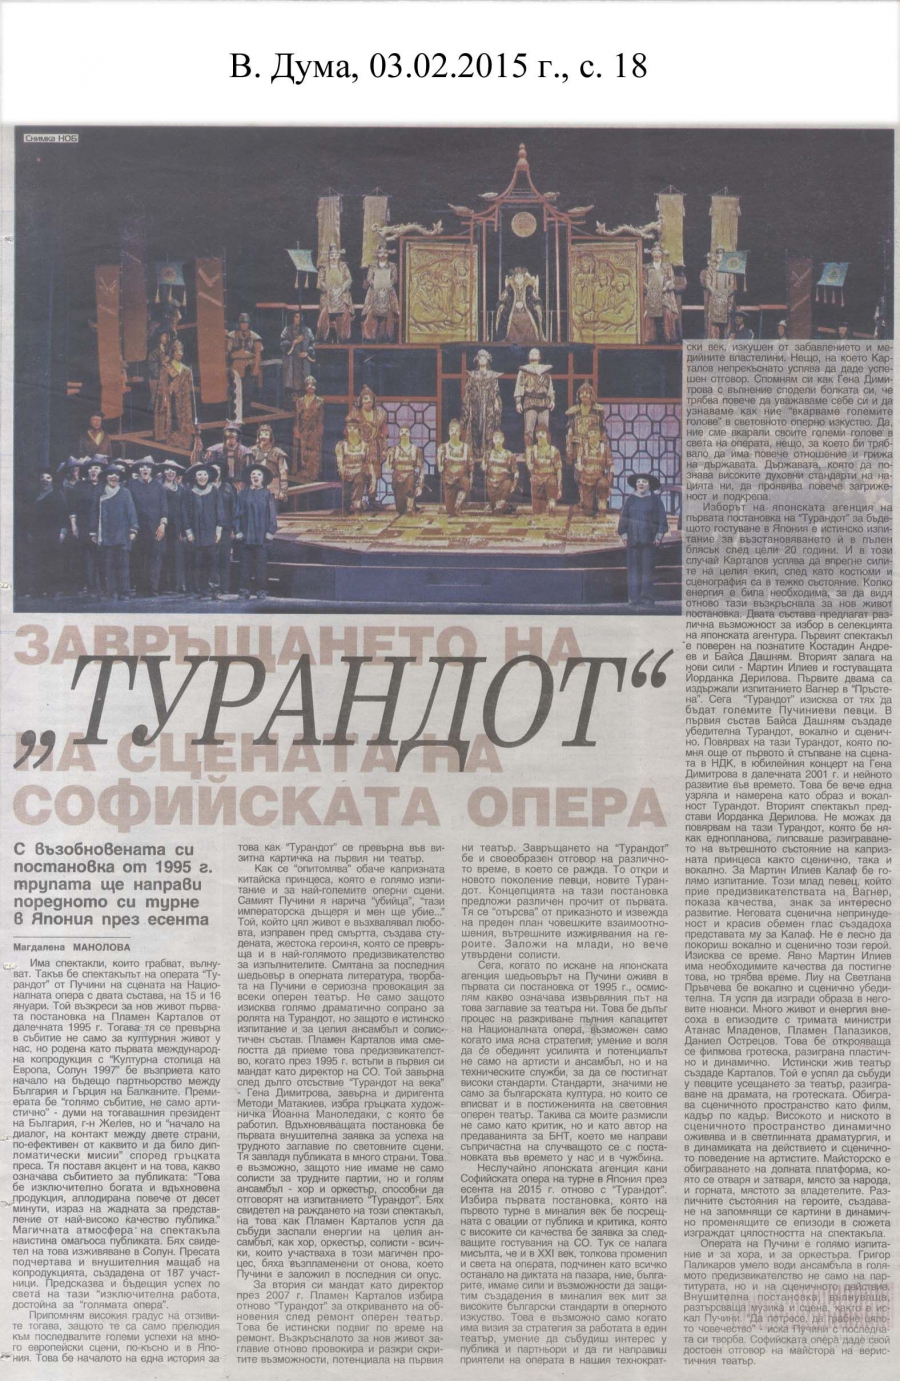 Завръщането на "Турандот" на сцената на Софийската опера и балет - в.Дума - 03.02.2015